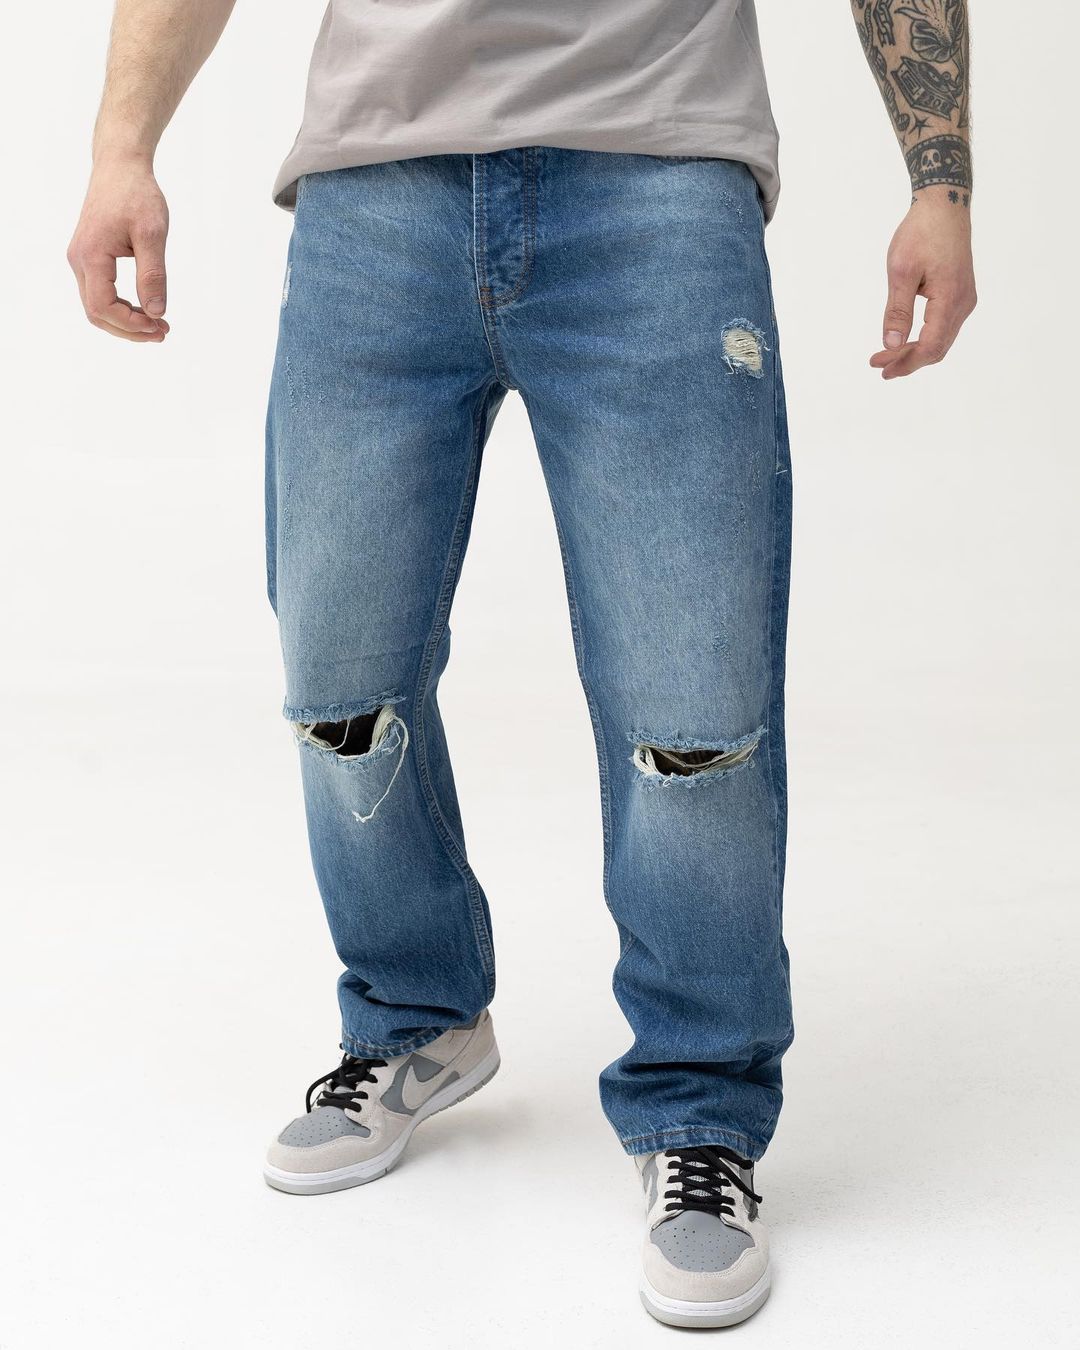 Мужские синие джинсы BEZET базовые рваные - Фото 1